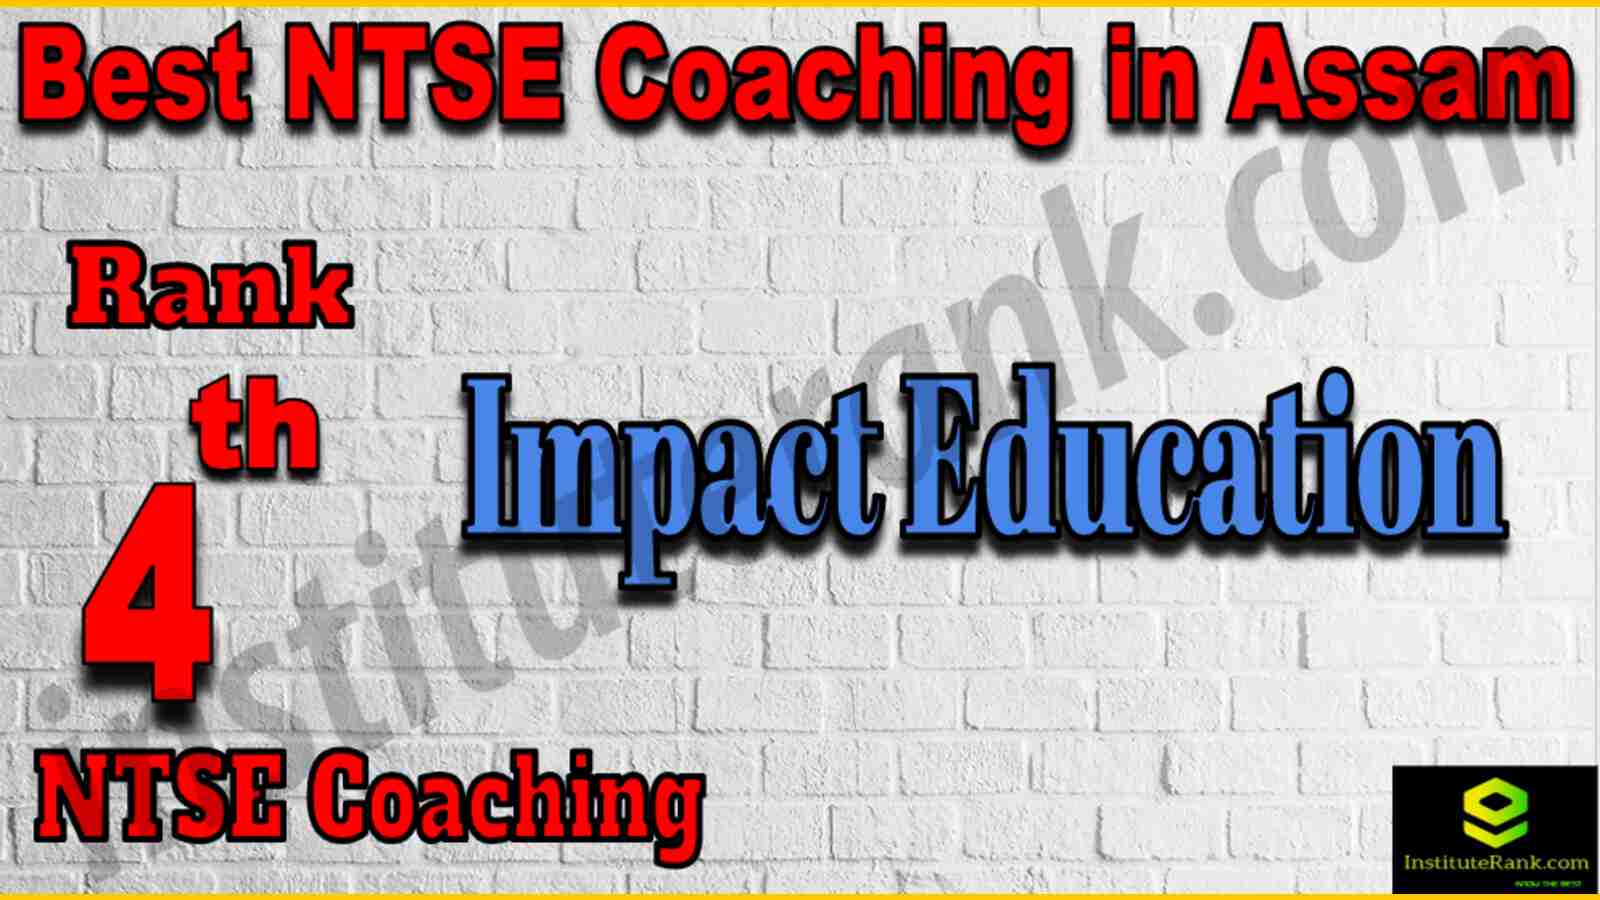 4th Best NTSE Coaching in Assam